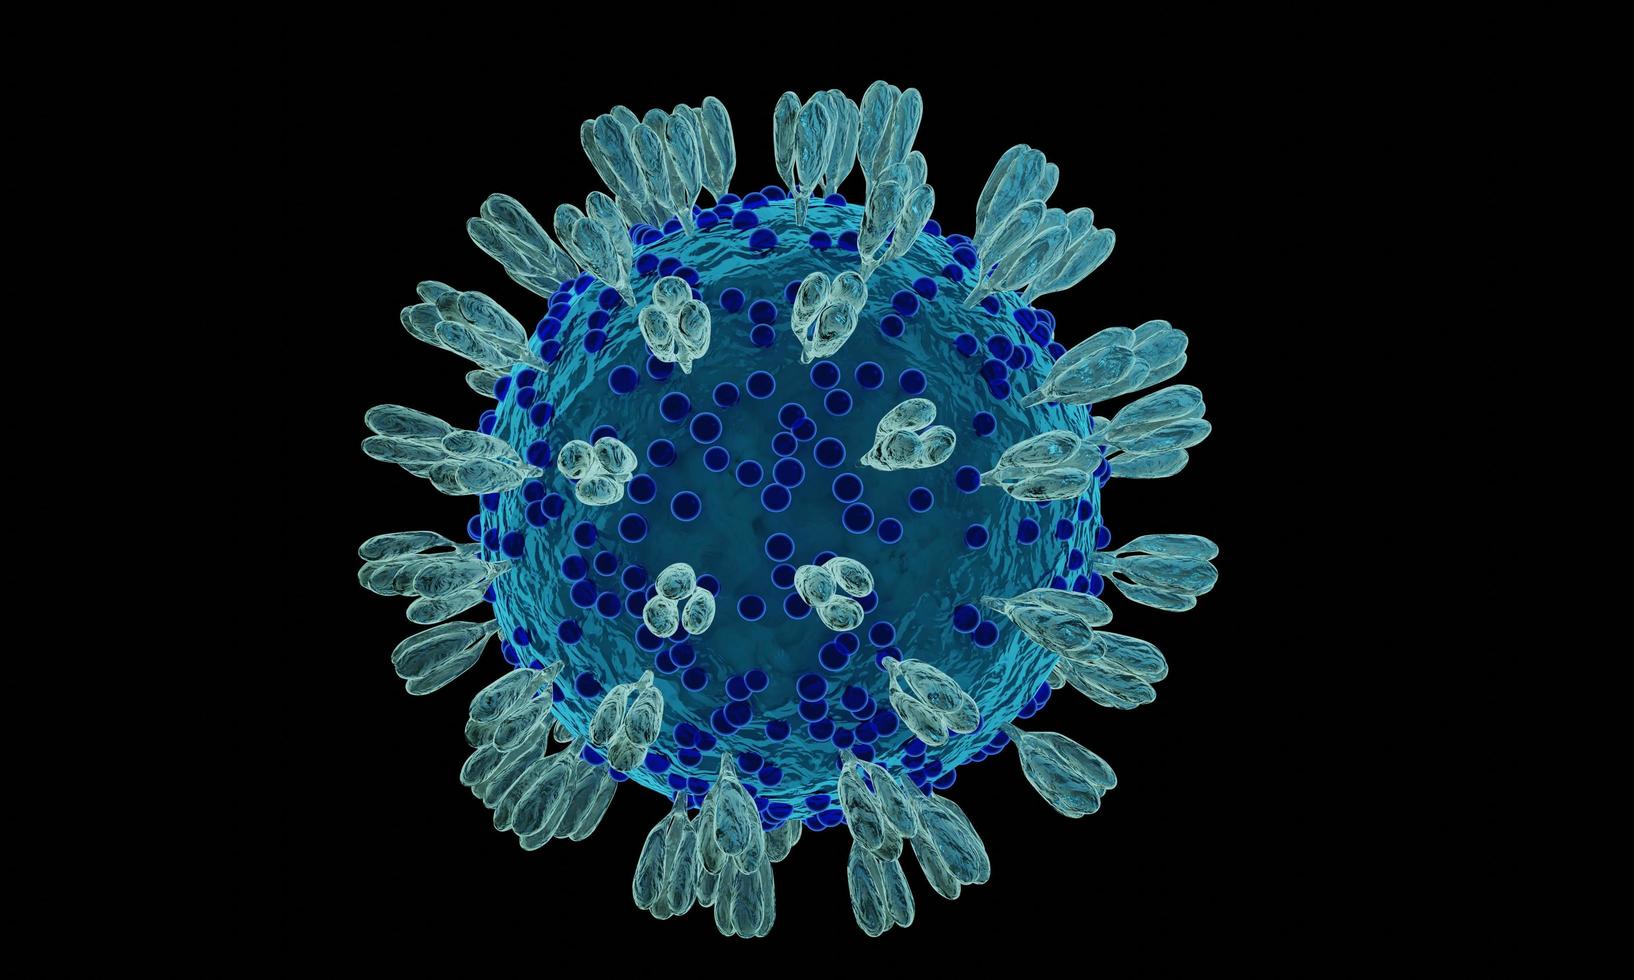 coronavirus 2019-ncov nieuw coronaviruscelconcept. gevaarlijke gevallen van griepstammen als een pandemie. Microscoop virus close-up. 3D-rendering. foto